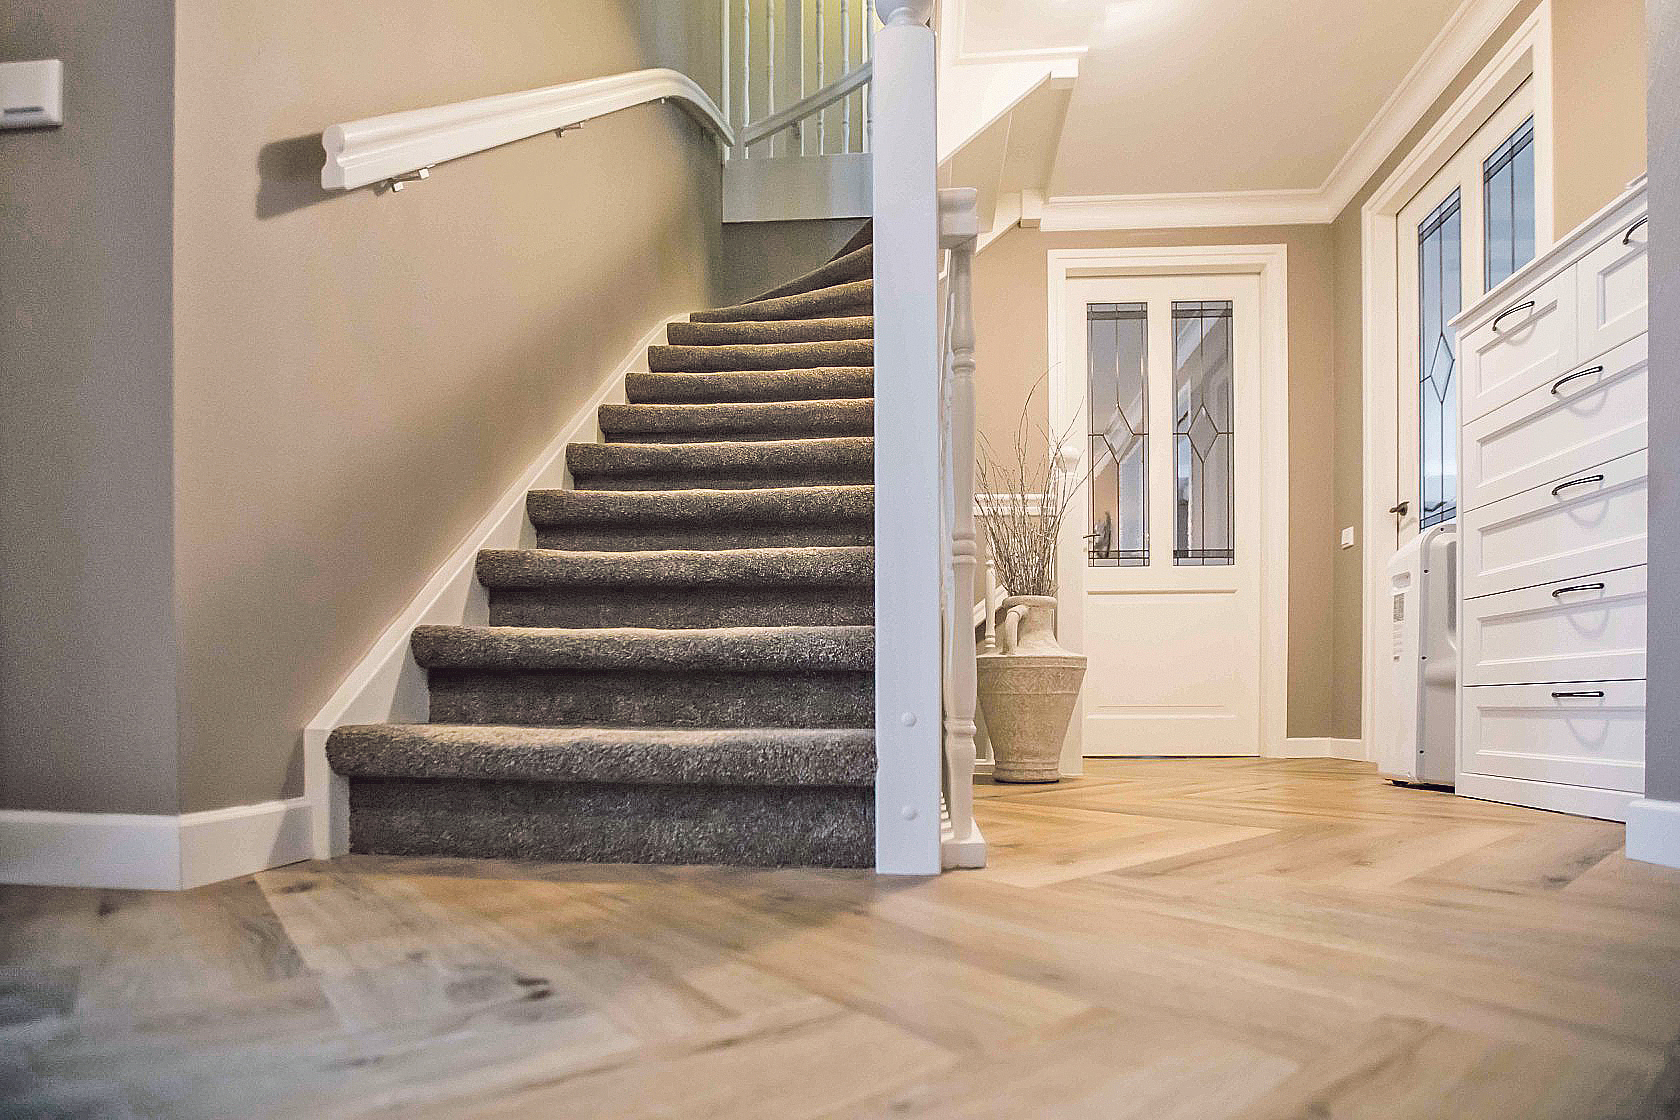 Floorever biedt jou voor jouw (t)huis ‘all-inclusive’ vloer en raamdecoratie